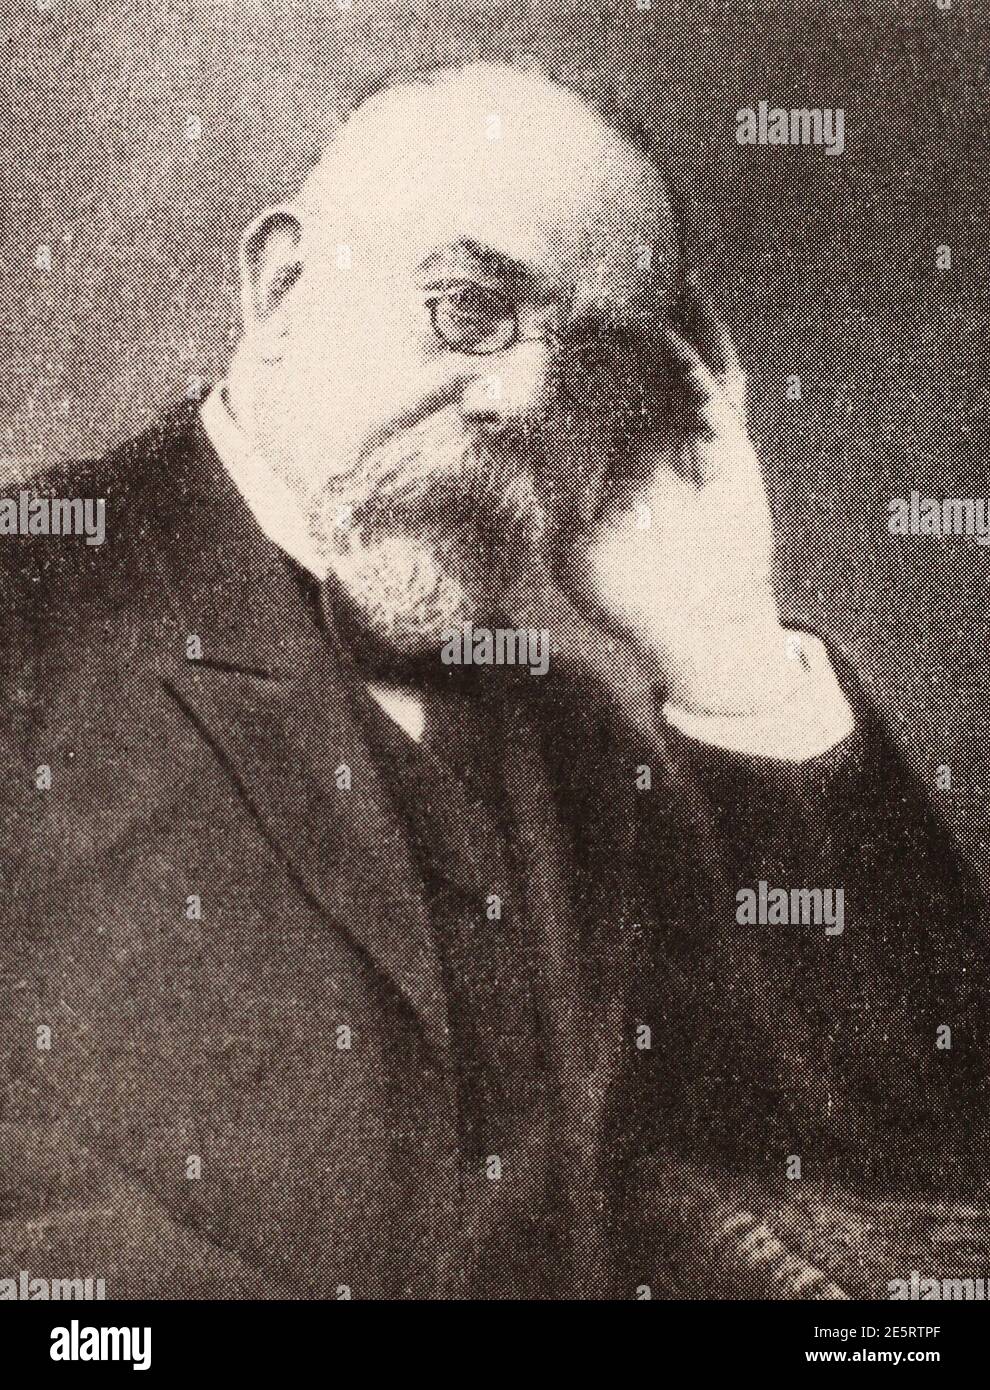 Robert Koch. Heinrich Hermann Robert Koch (11 décembre 1843 – 27 mai 1910) était un médecin et microbiologiste allemand. Banque D'Images